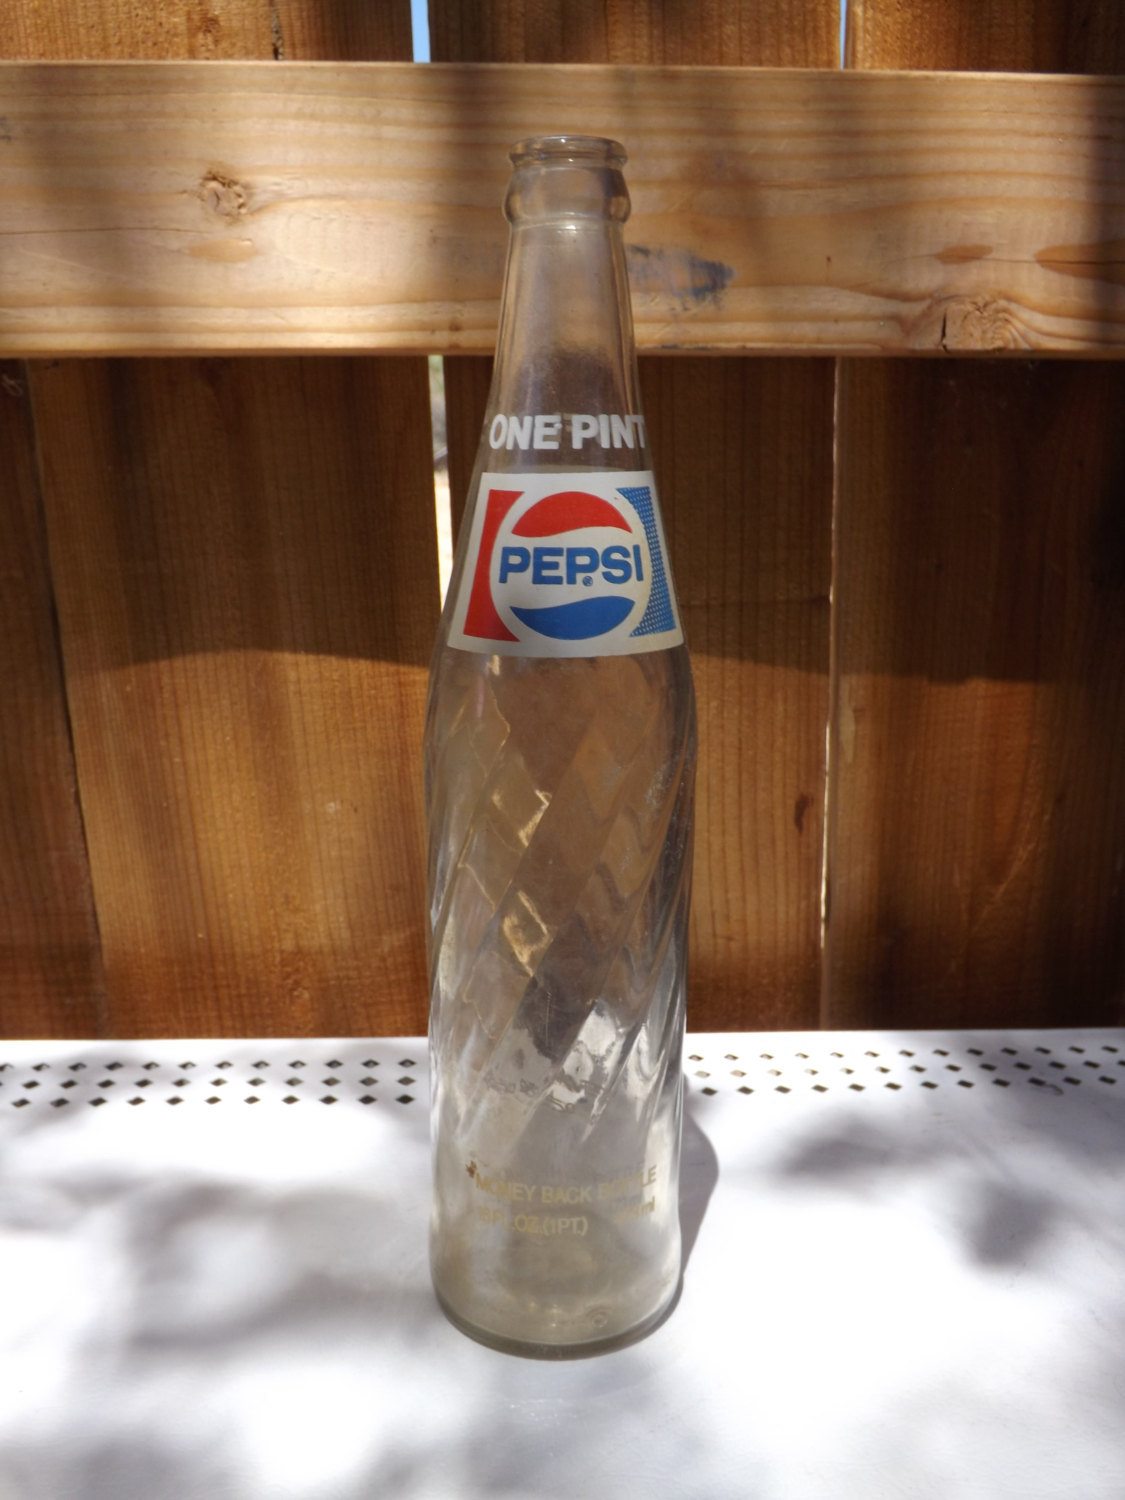 One Pint Pepsi Glass Soda Bottle - L 358 - Bottles